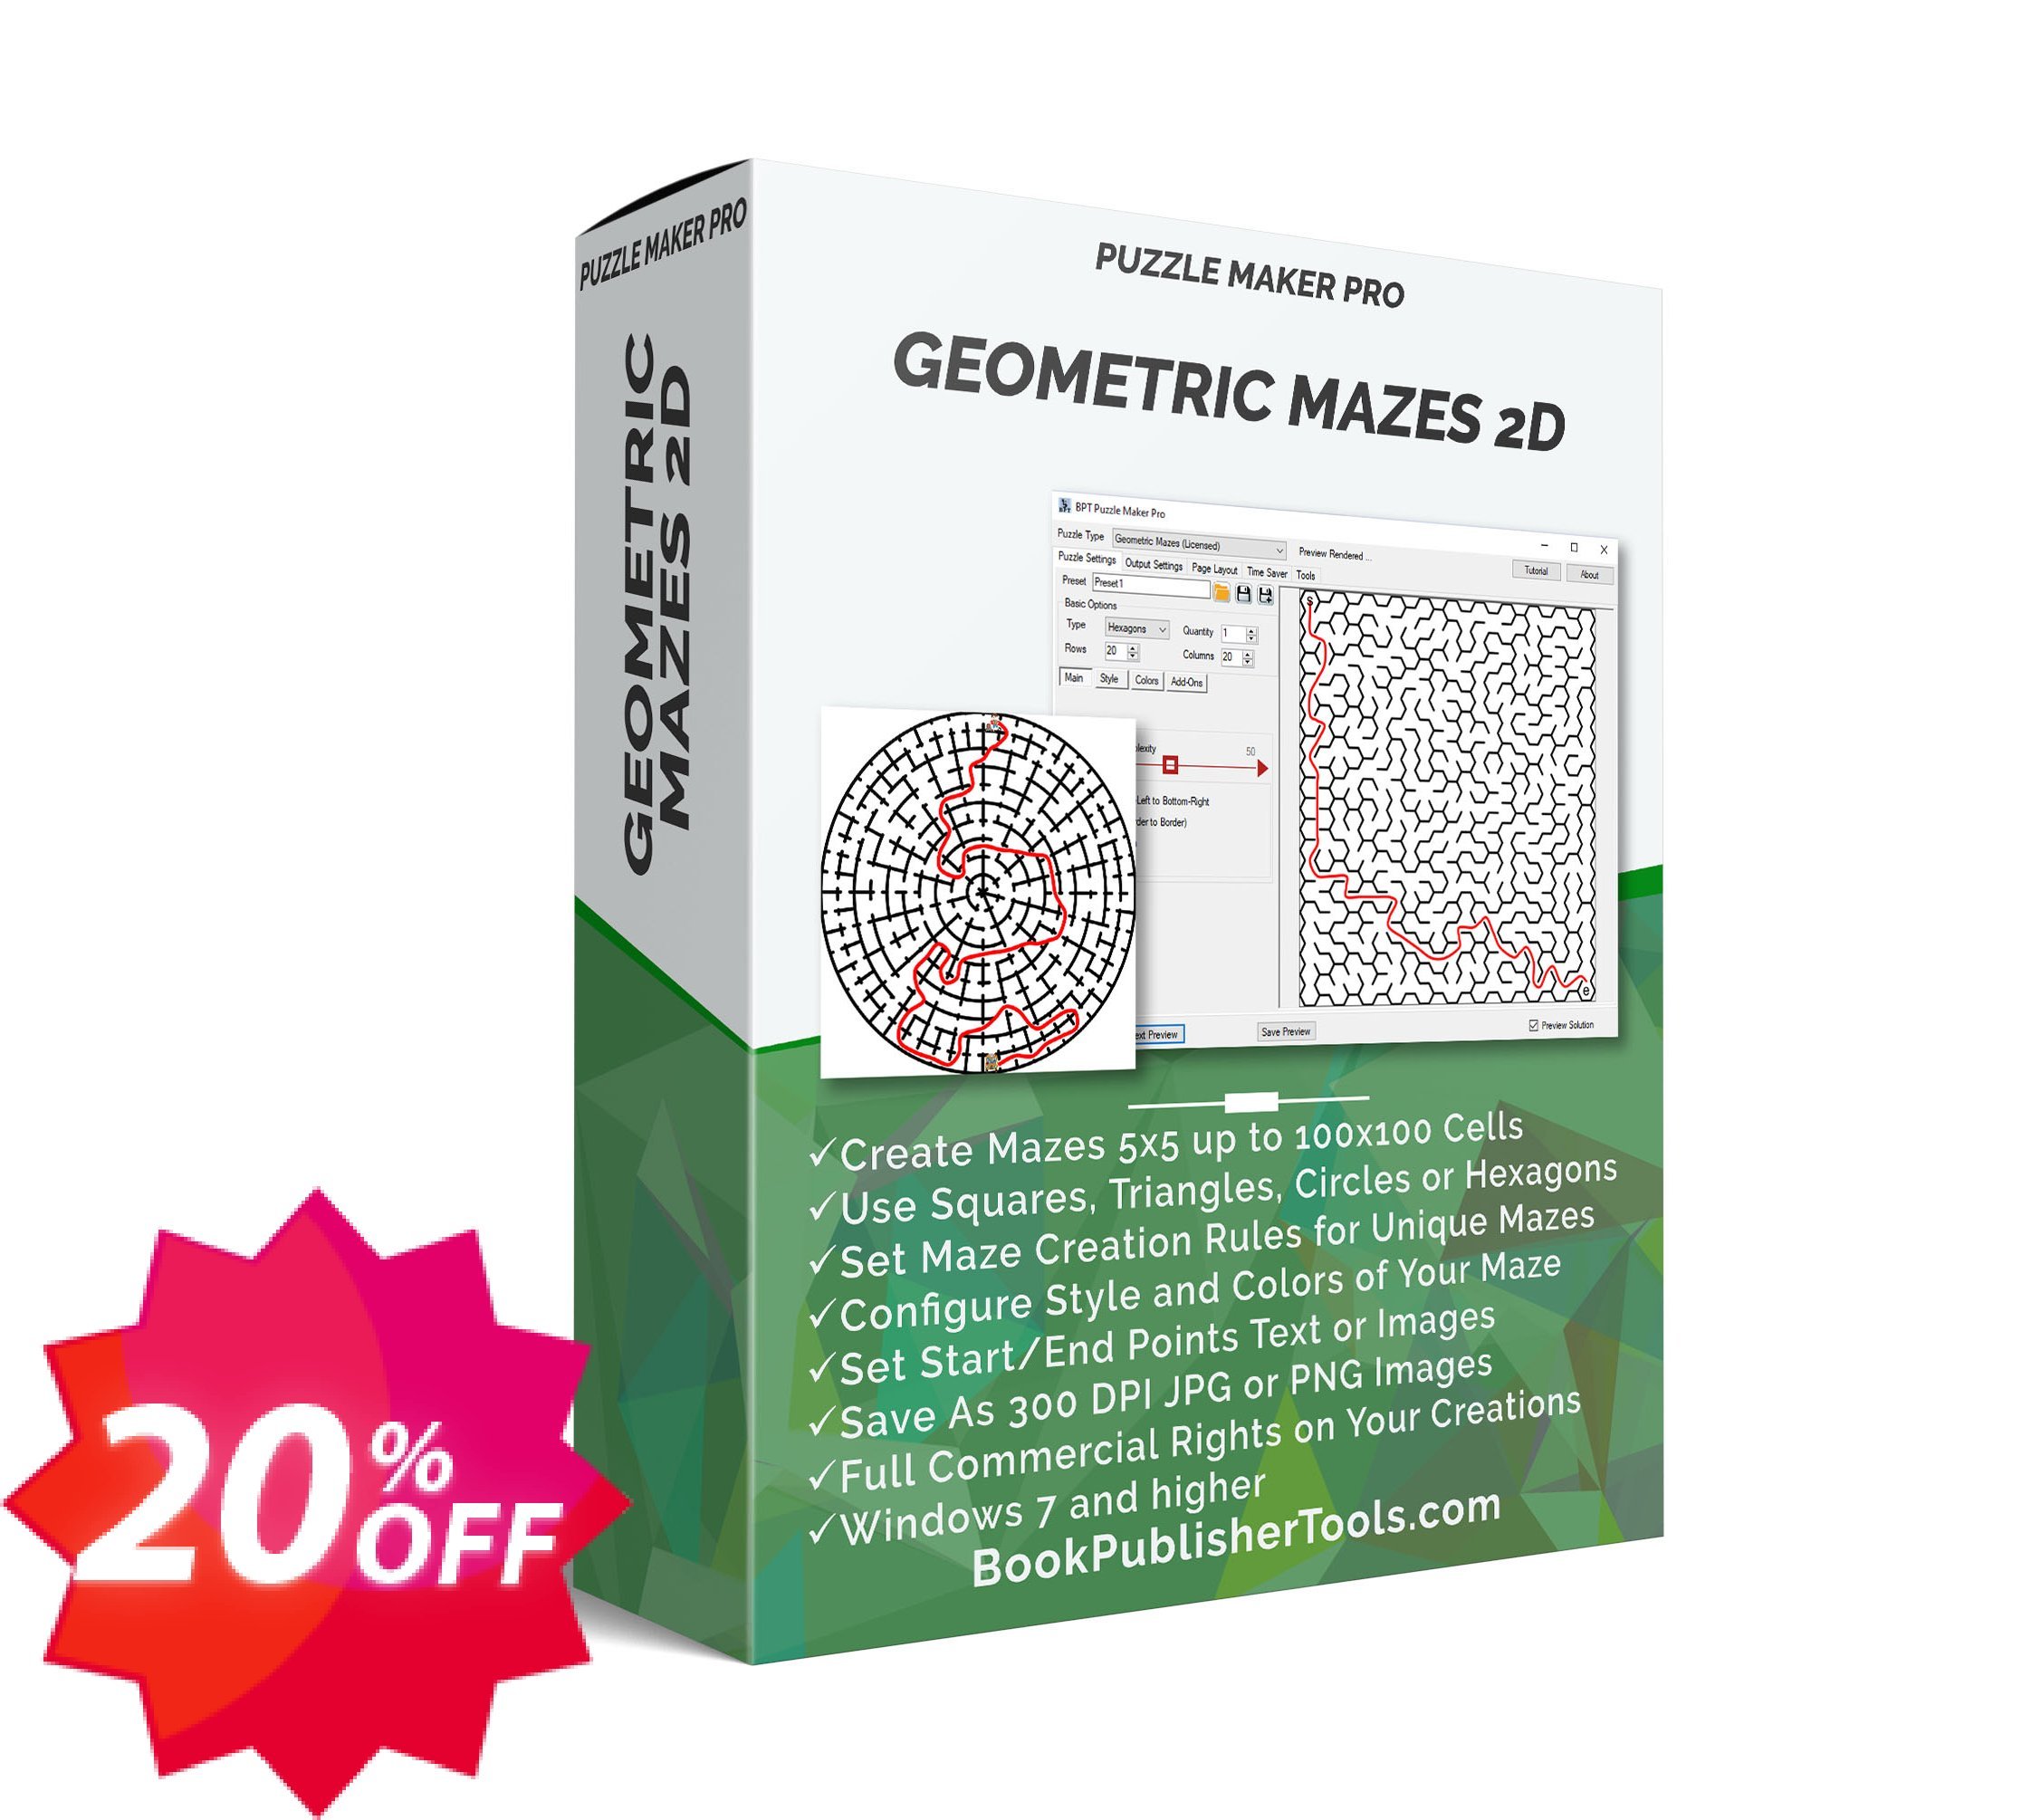 Puzzle Maker Pro - Geometric Mazes 2D Coupon code 20% discount 